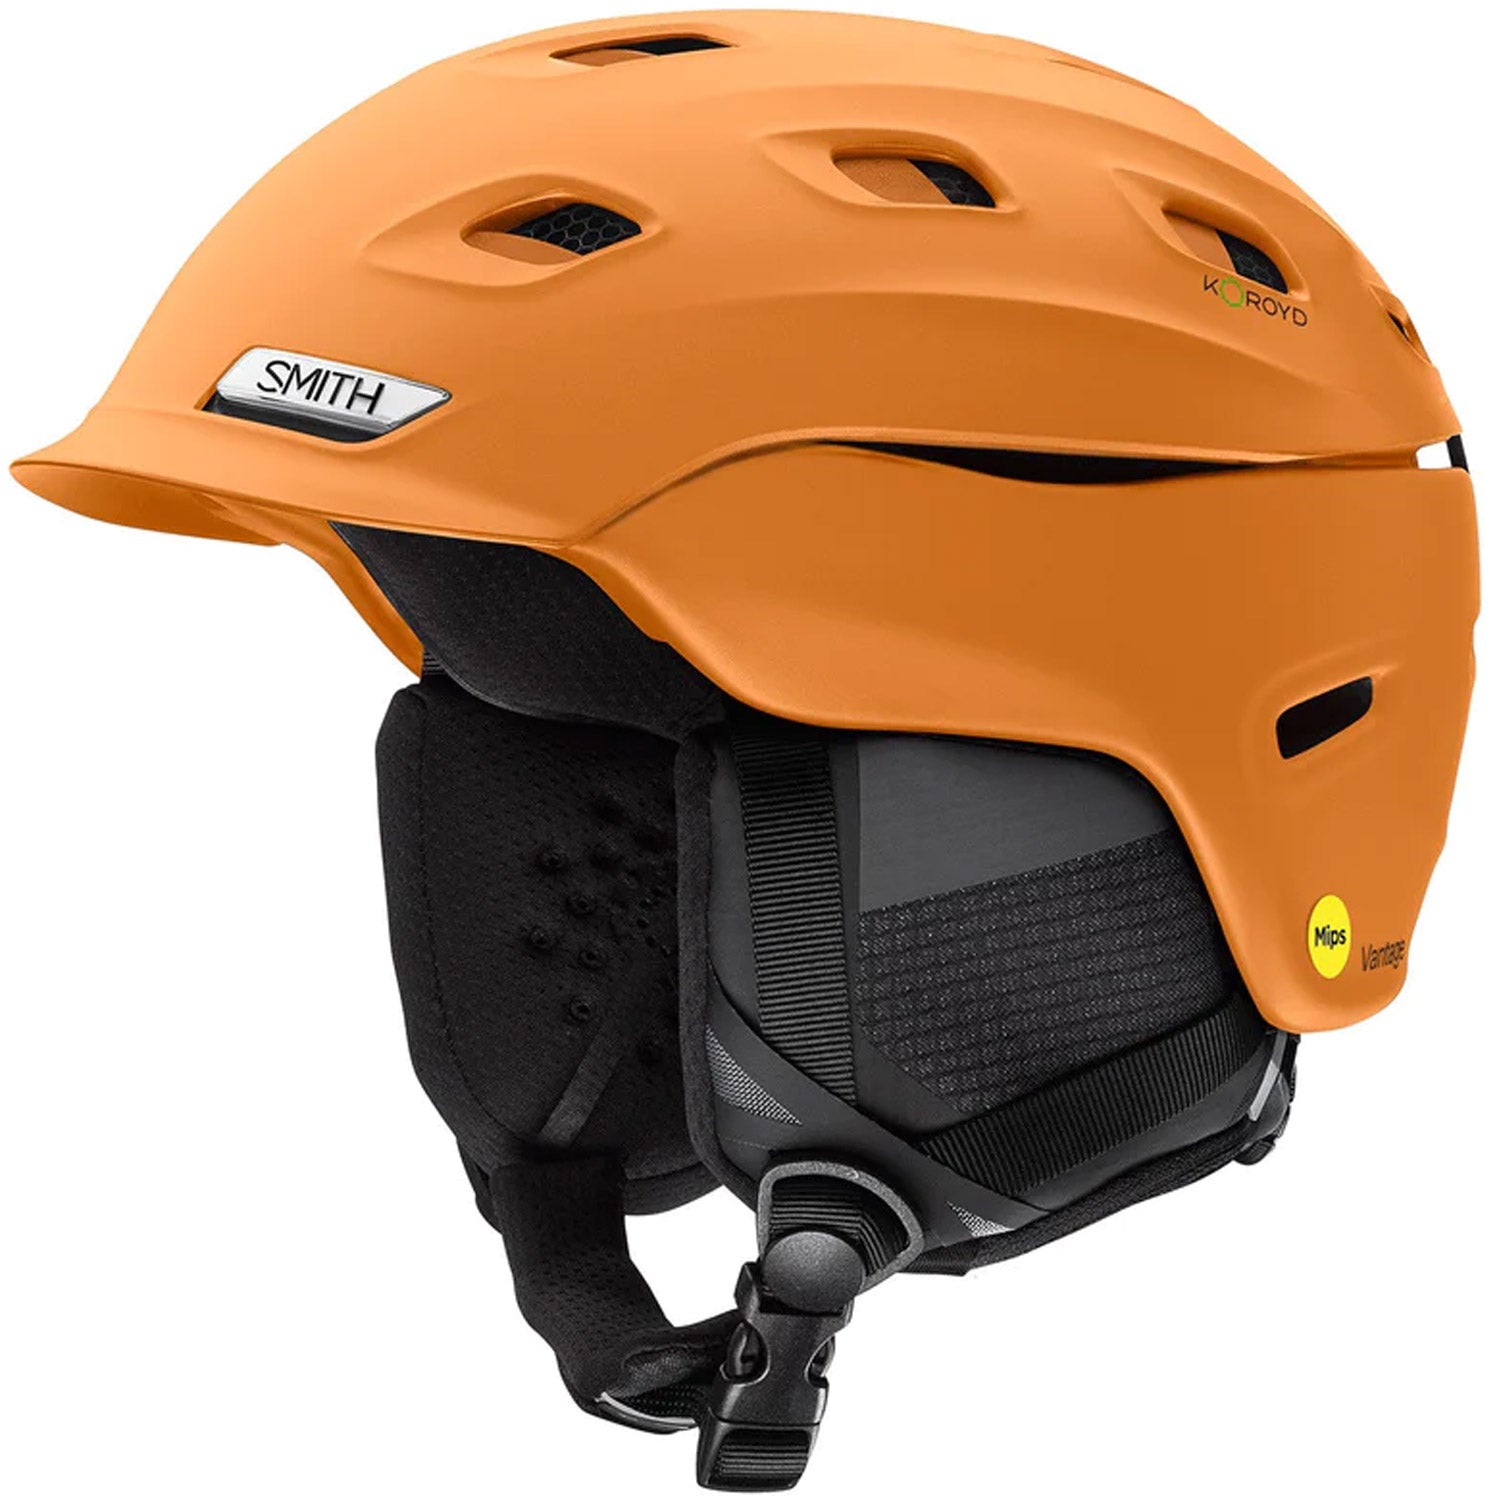 Vantage MIPS Snow Helmet